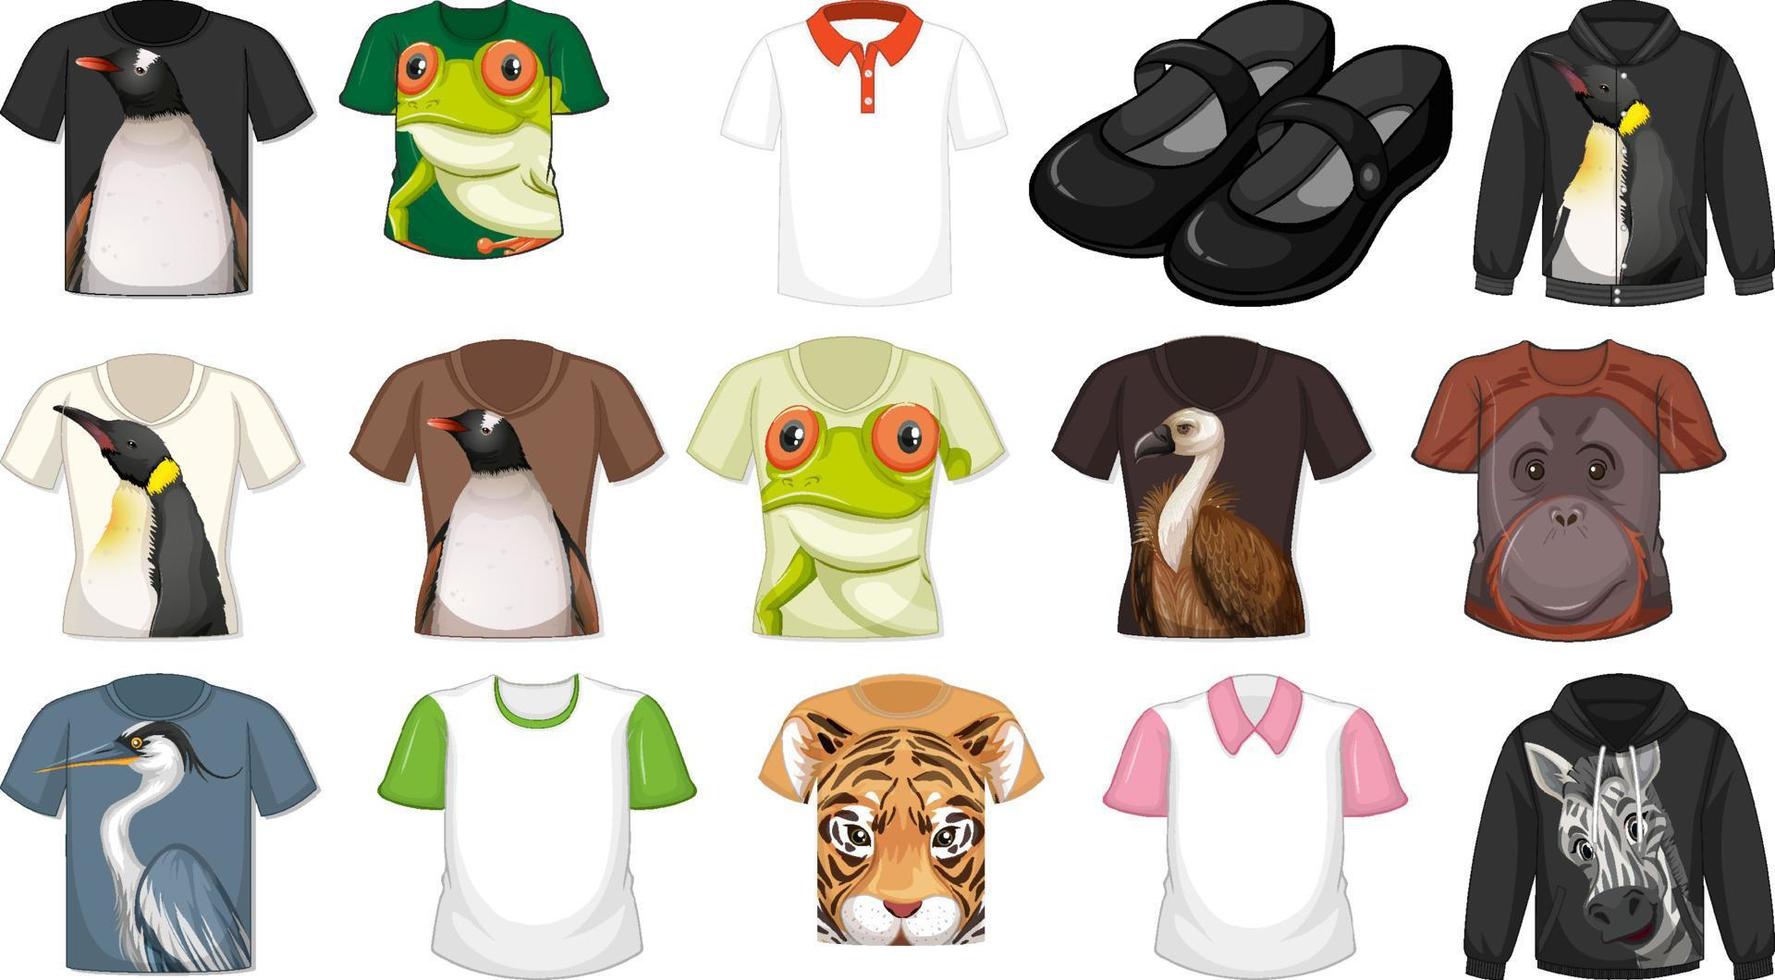 ensemble de chemises et accessoires différents avec des motifs d'animaux vecteur